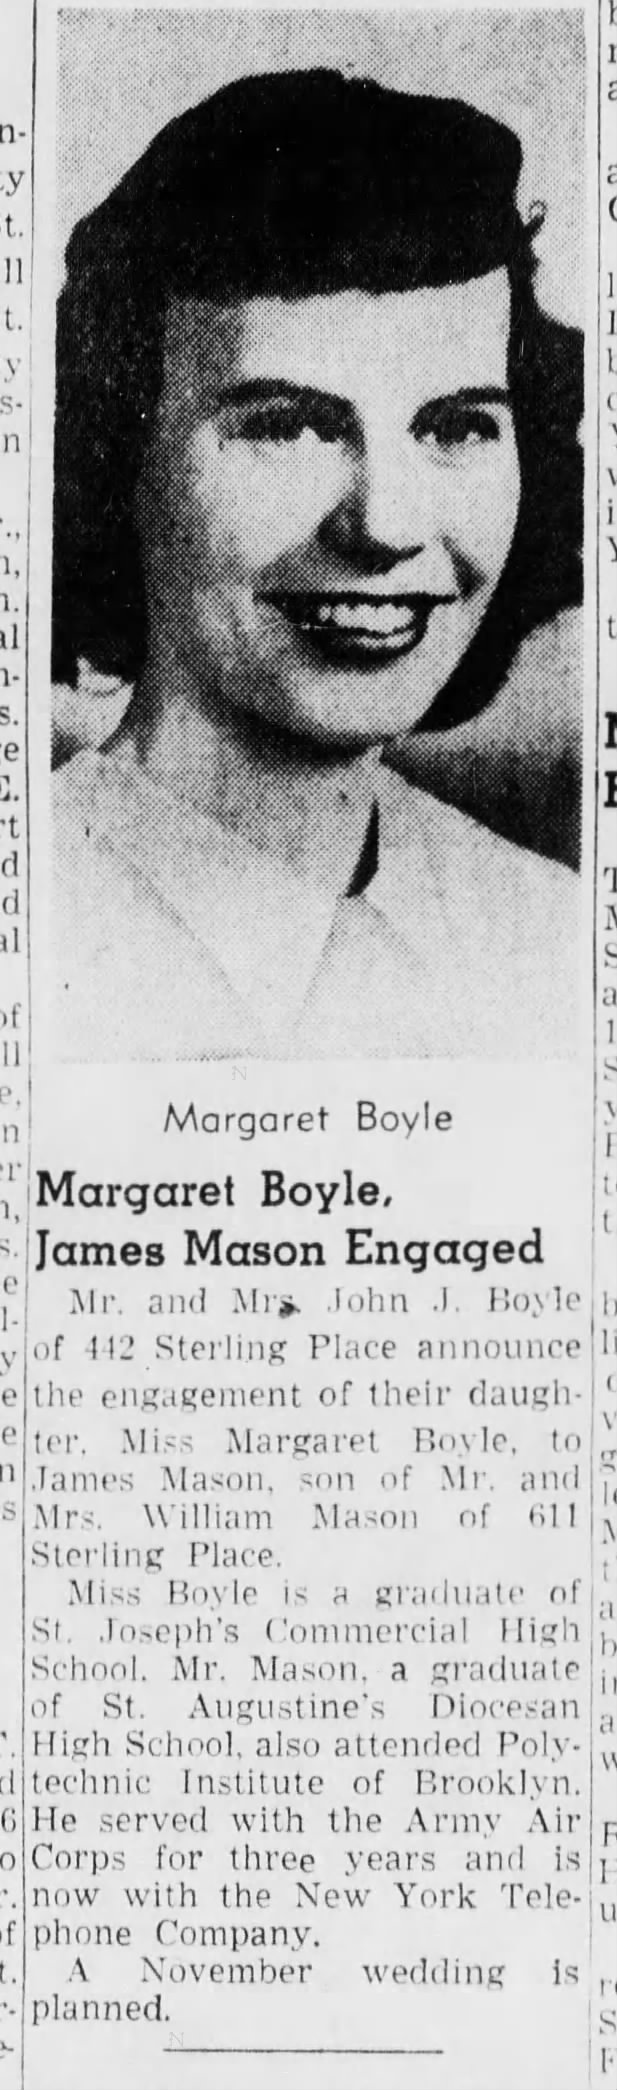 Engagement of Margaret Boyle and James Mason, 8 May 1949